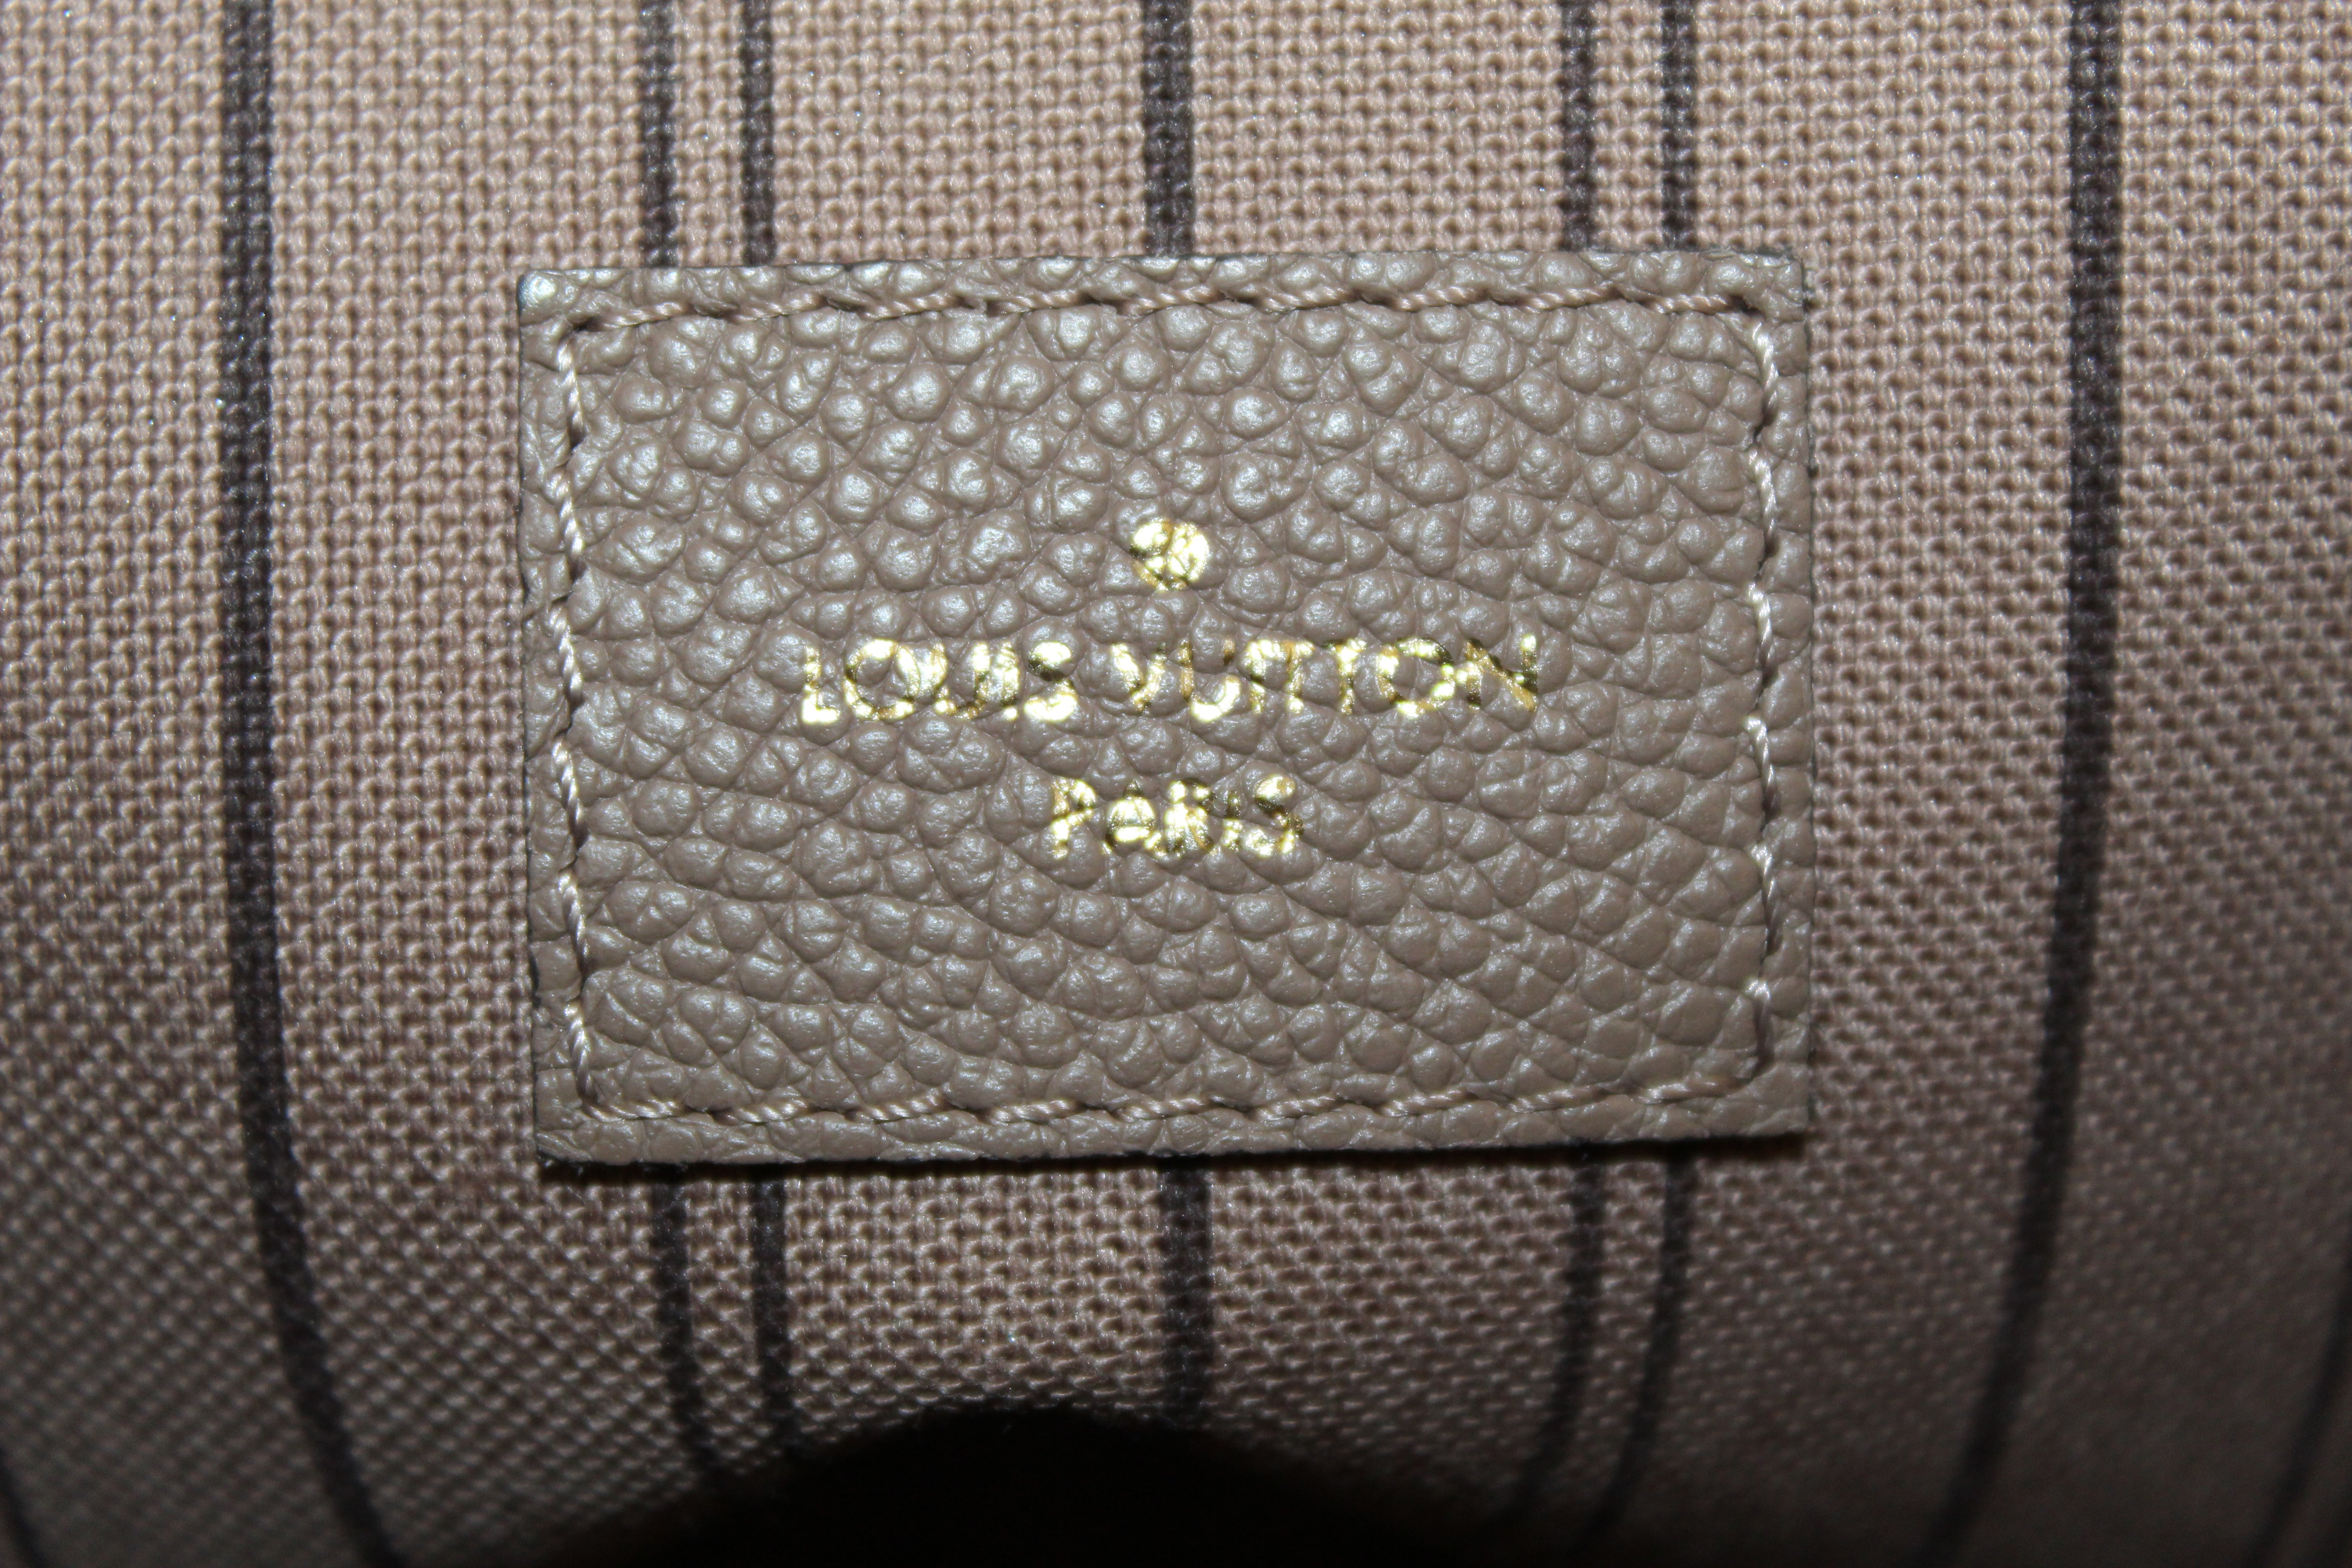 Louis Vuitton Monogram Empreinte Leather Mazarine Bag